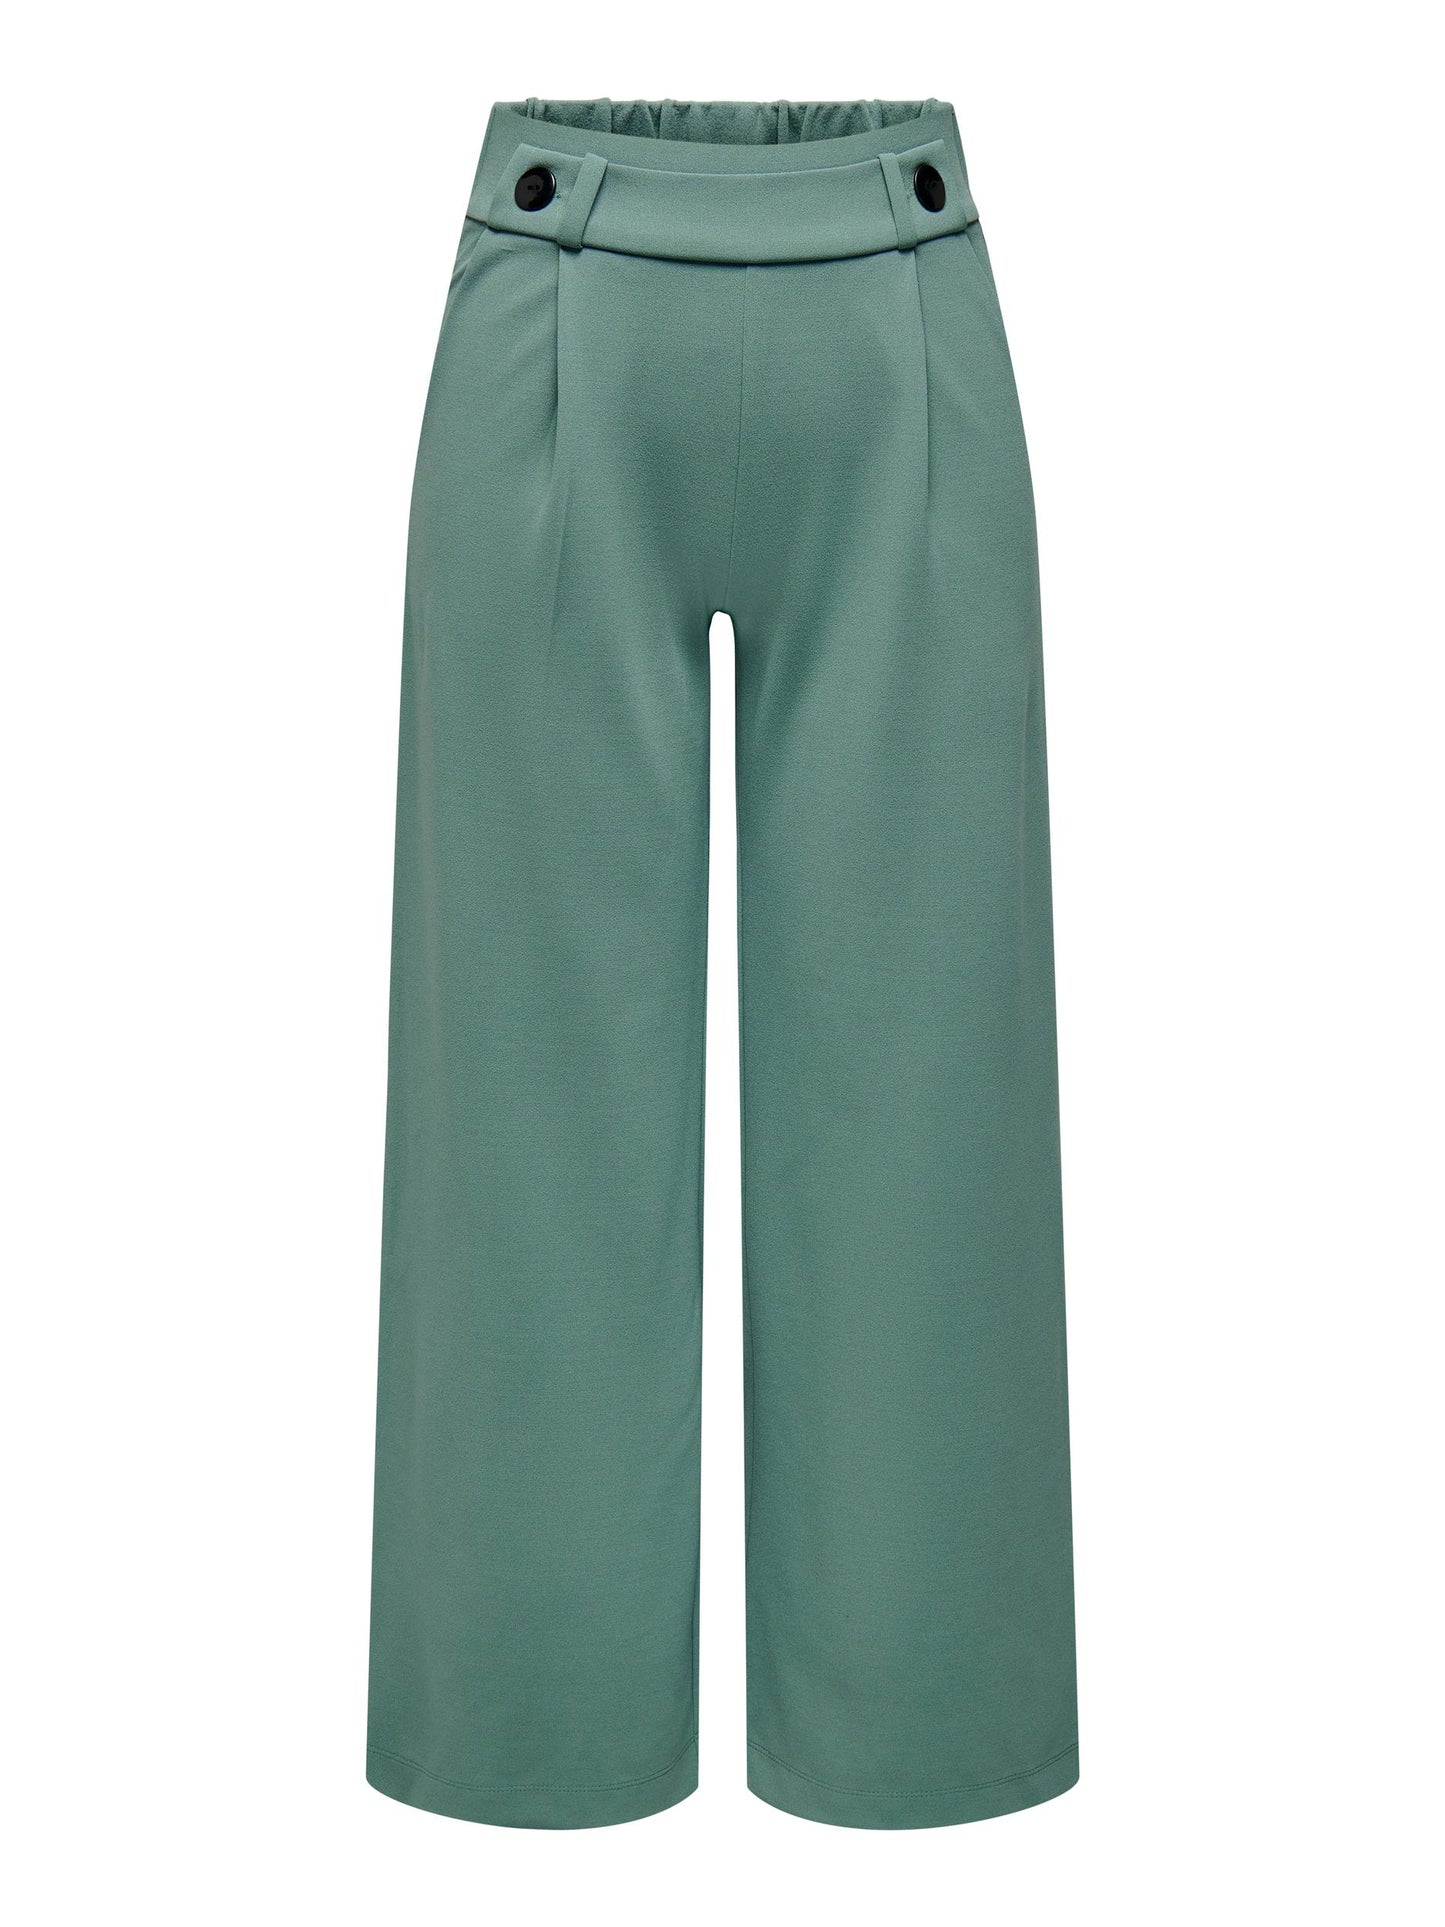 Green wide leg trousers